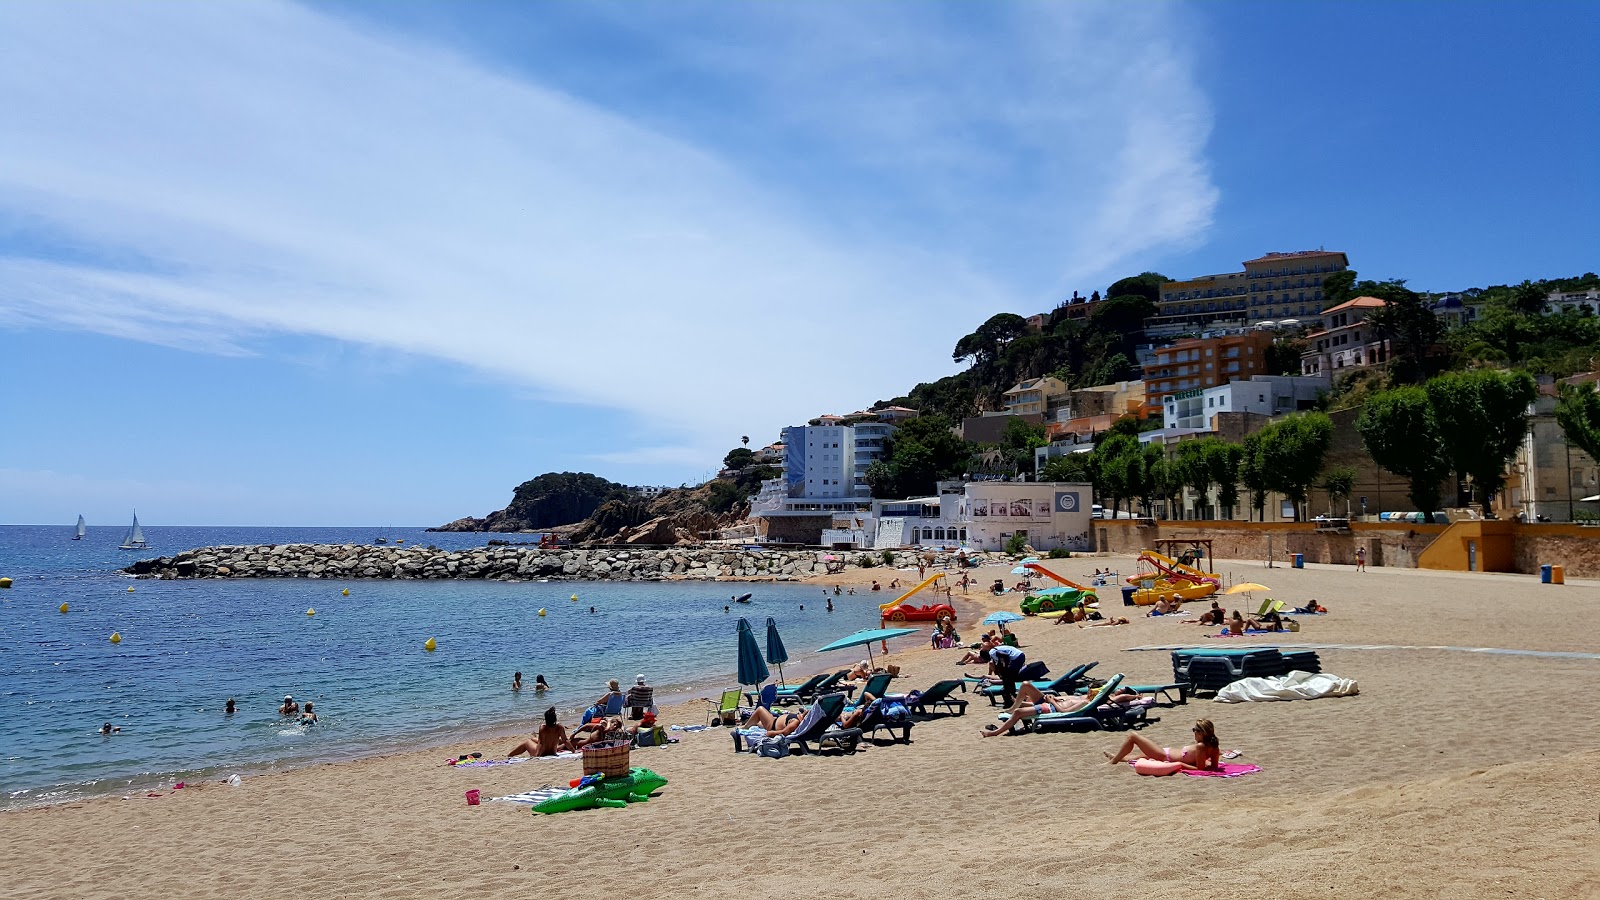 Fotografija Playa de Sant Feliu z turkizna čista voda površino